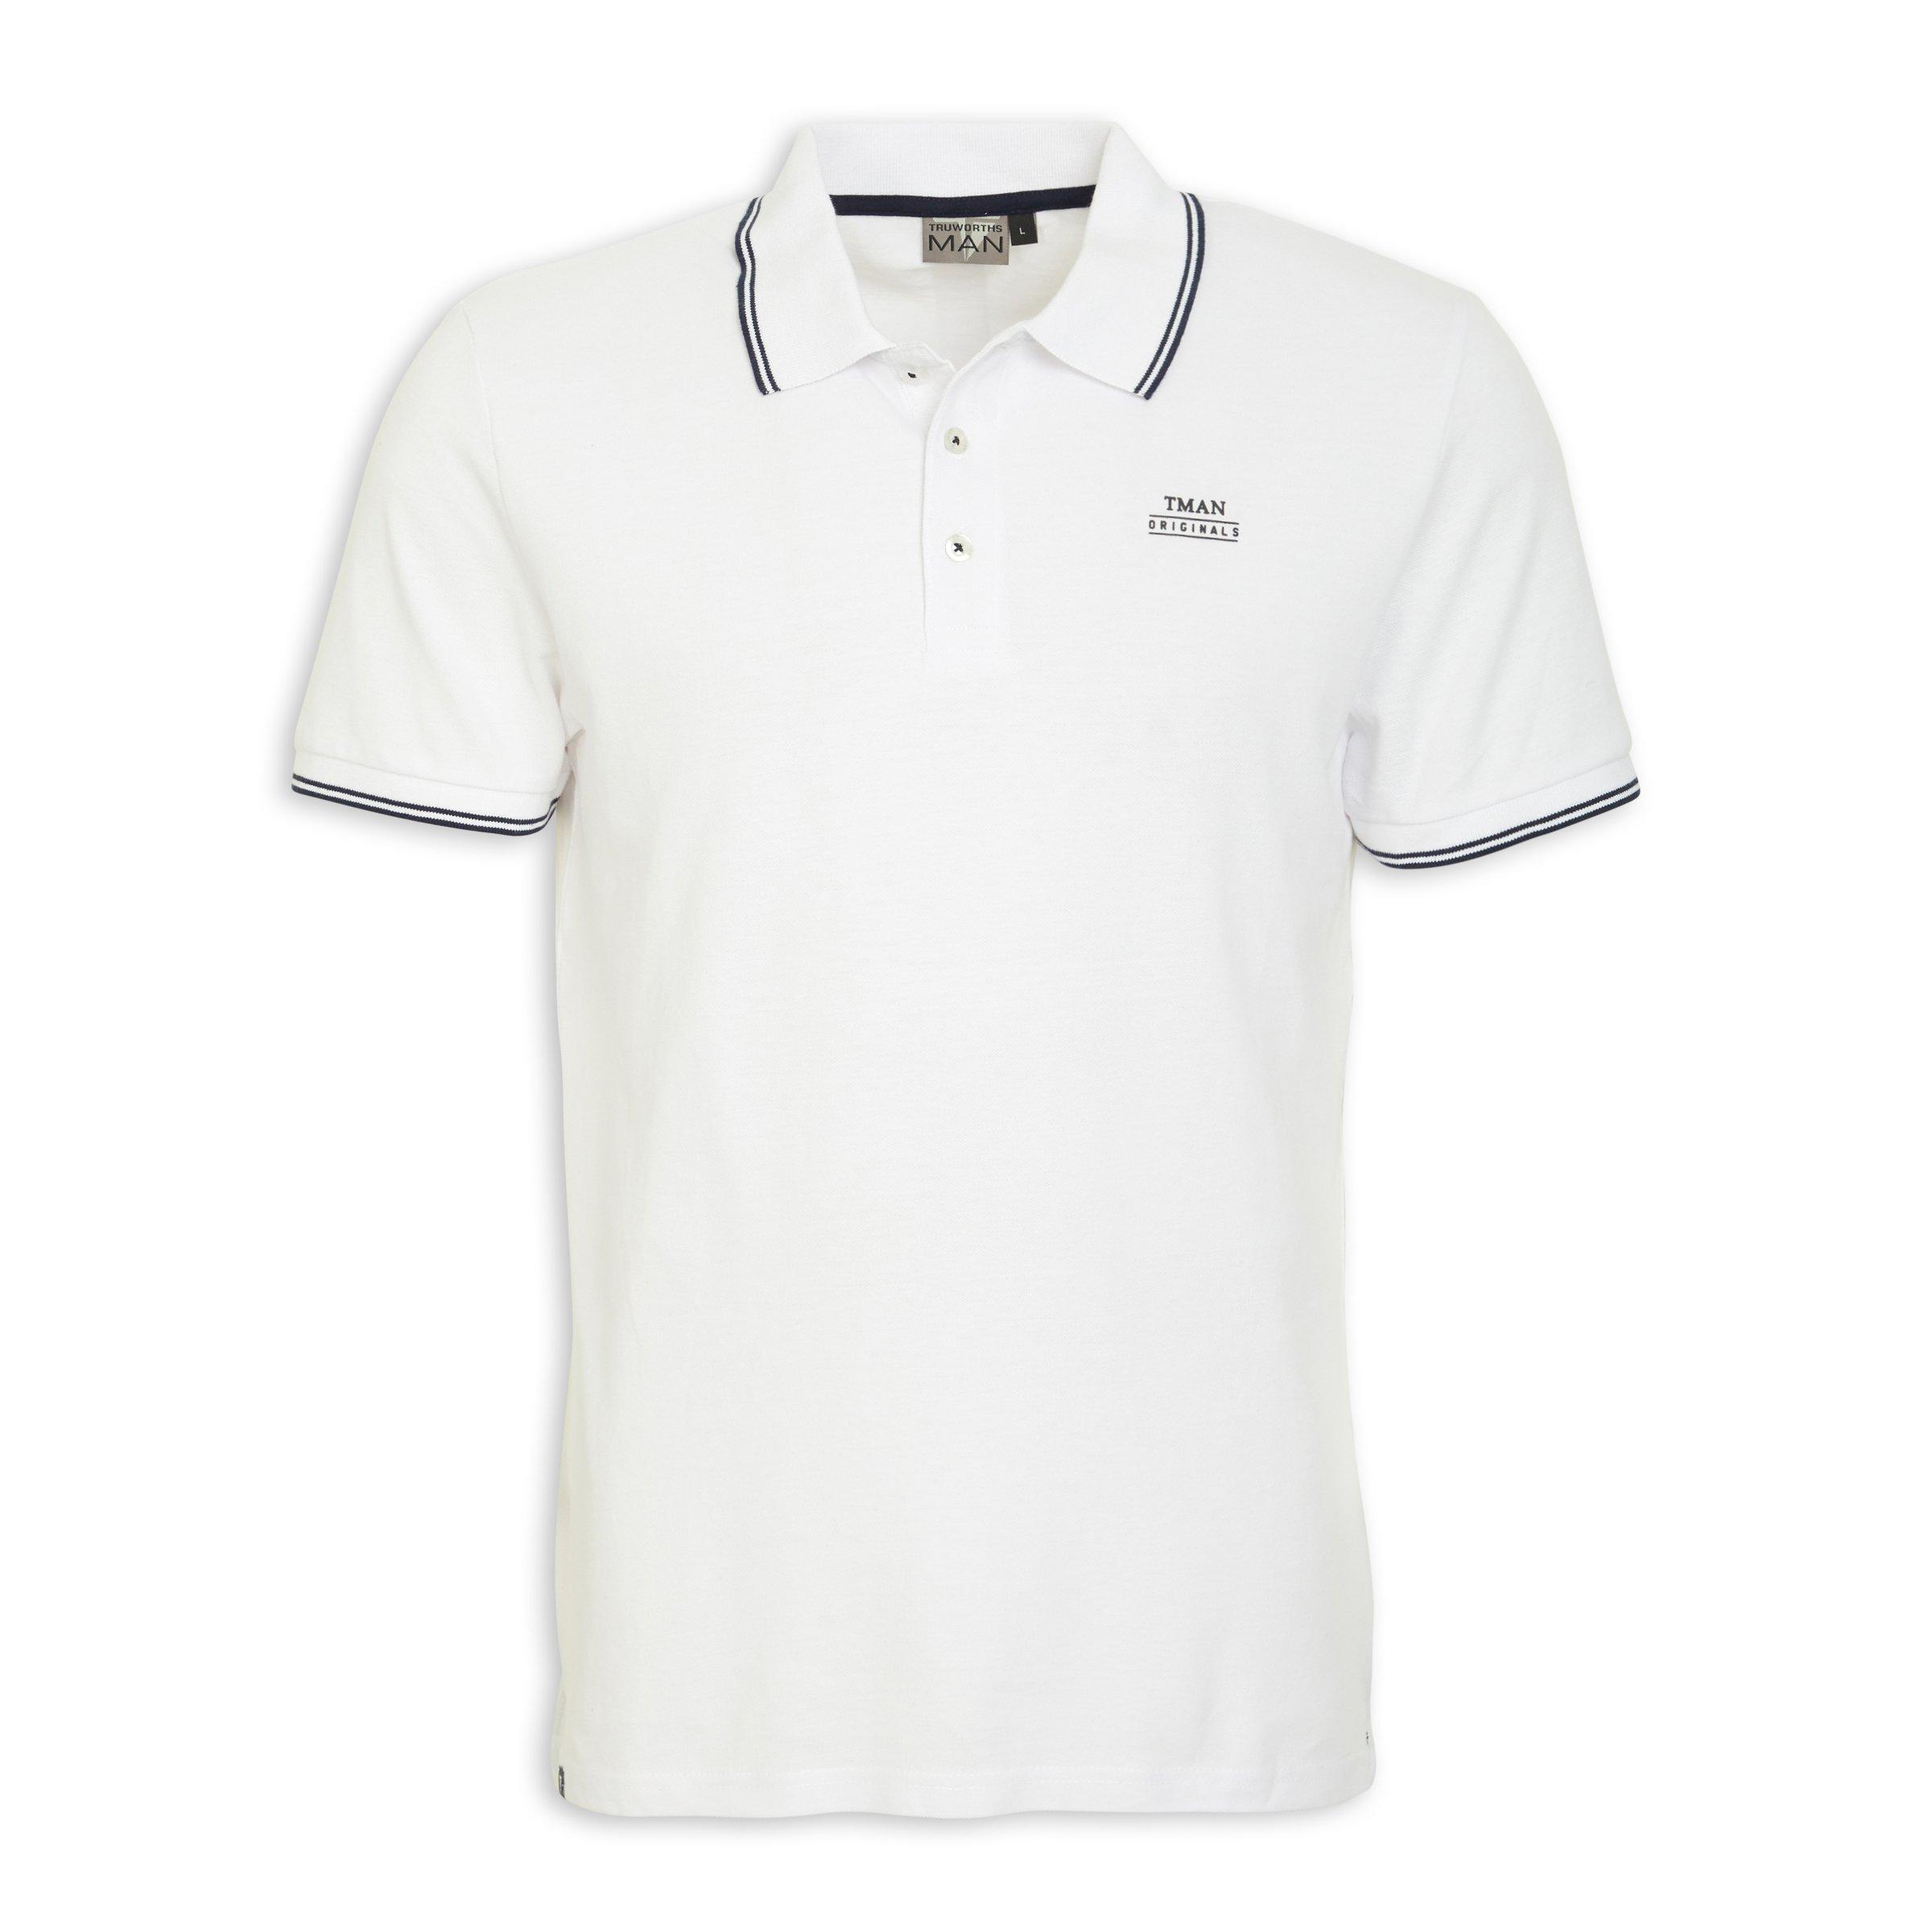 White Golf Shirts For Sale Discount | bellvalefarms.com